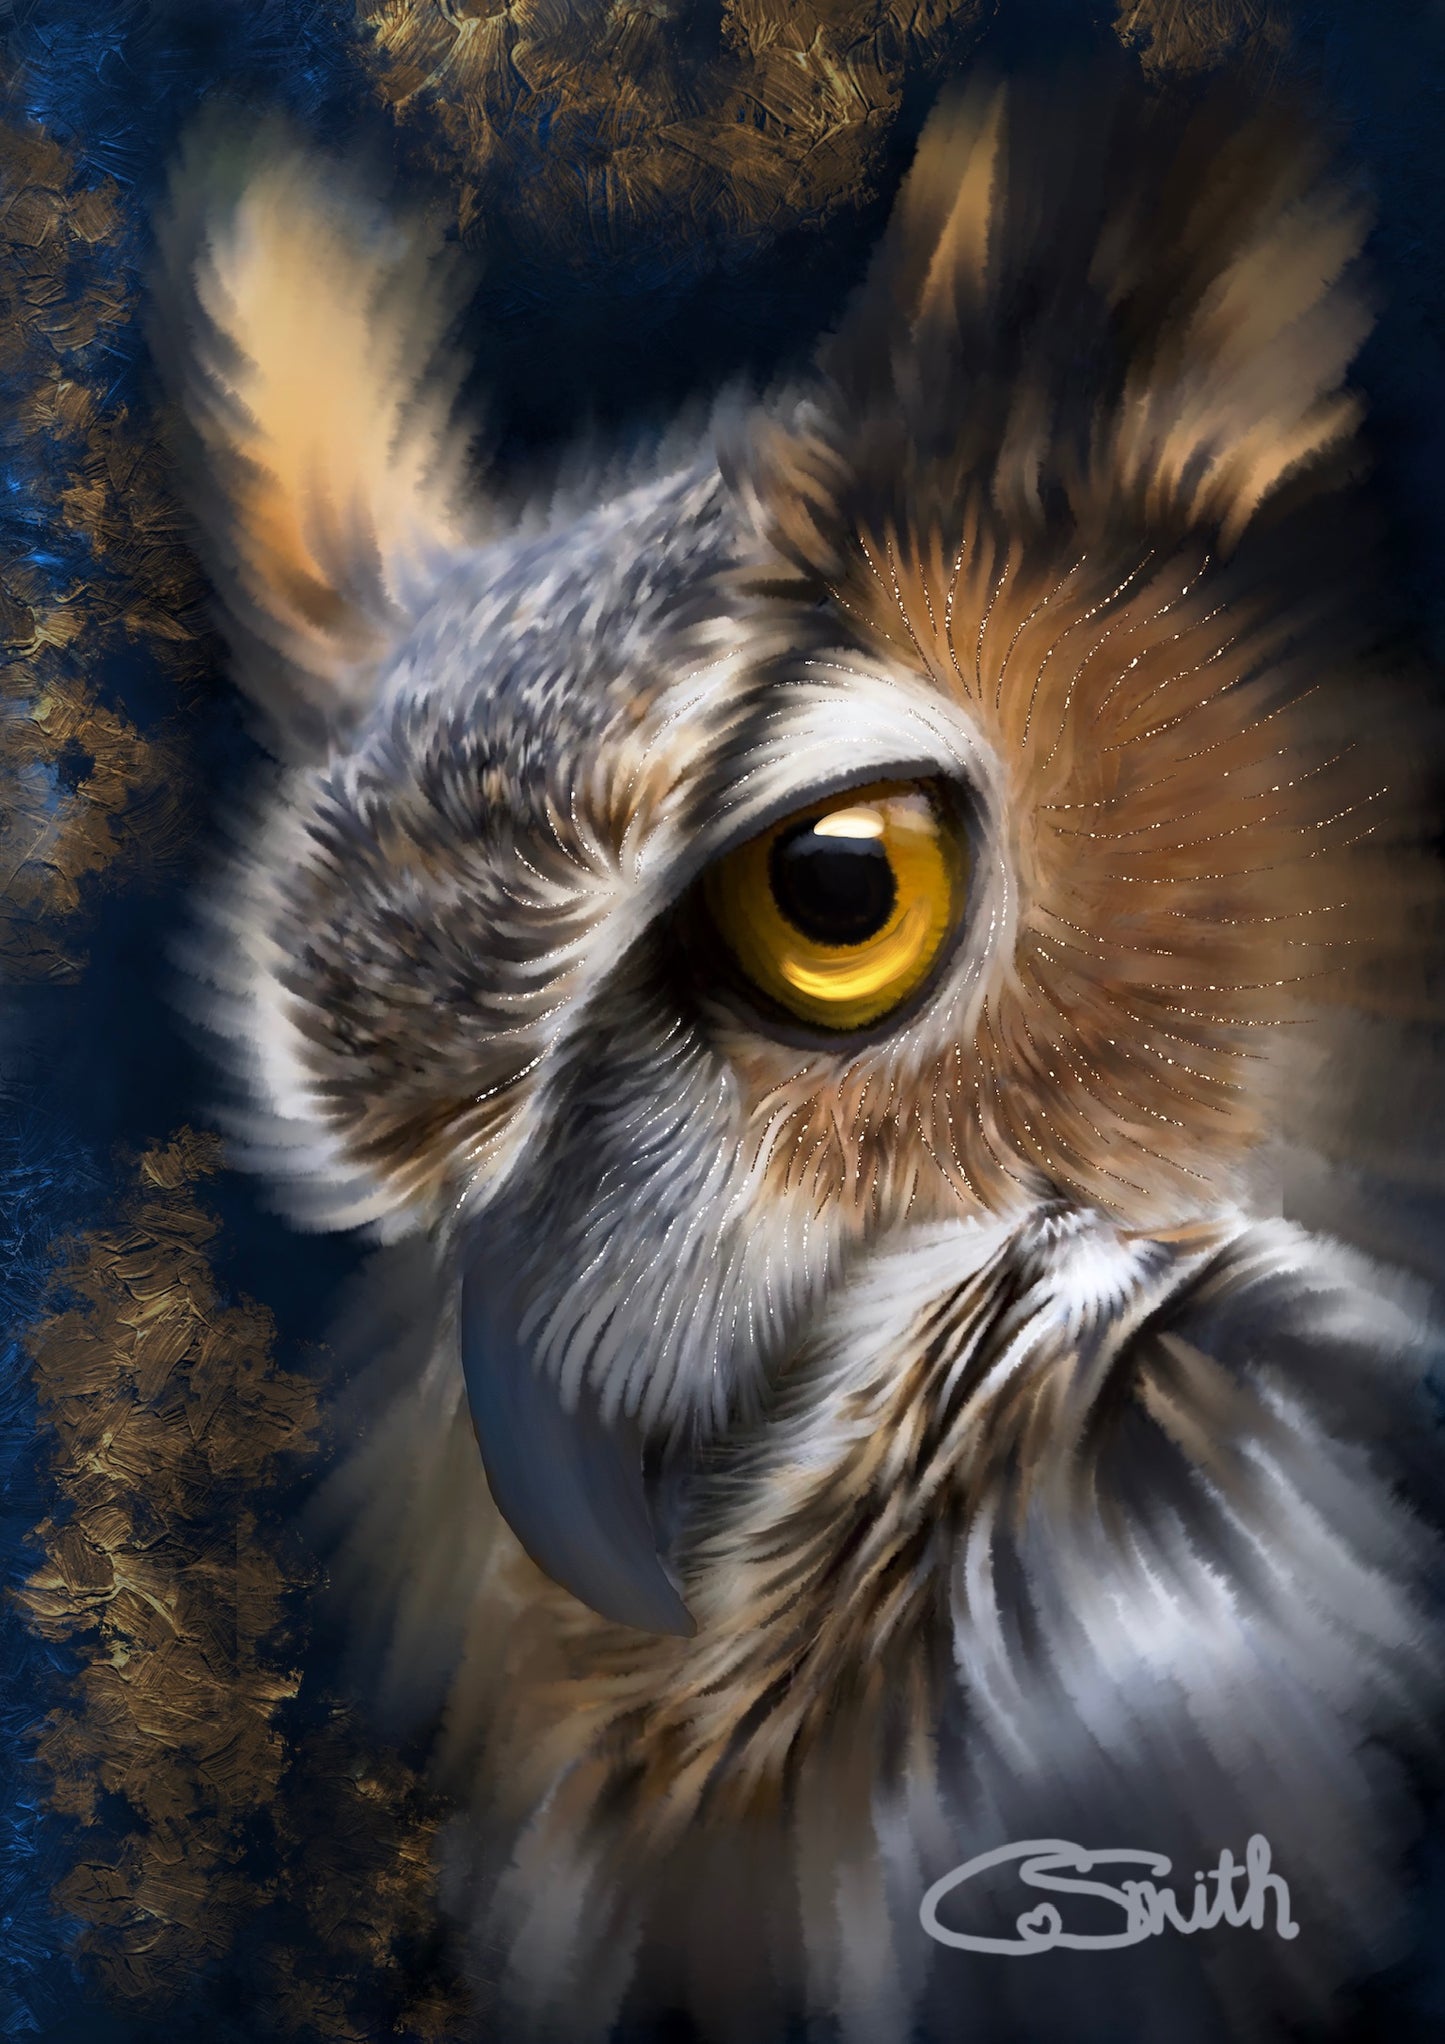 British Wildlife Art Owl Framed Print 14" x 11" (Matte Black or White Frame) Gift Idea